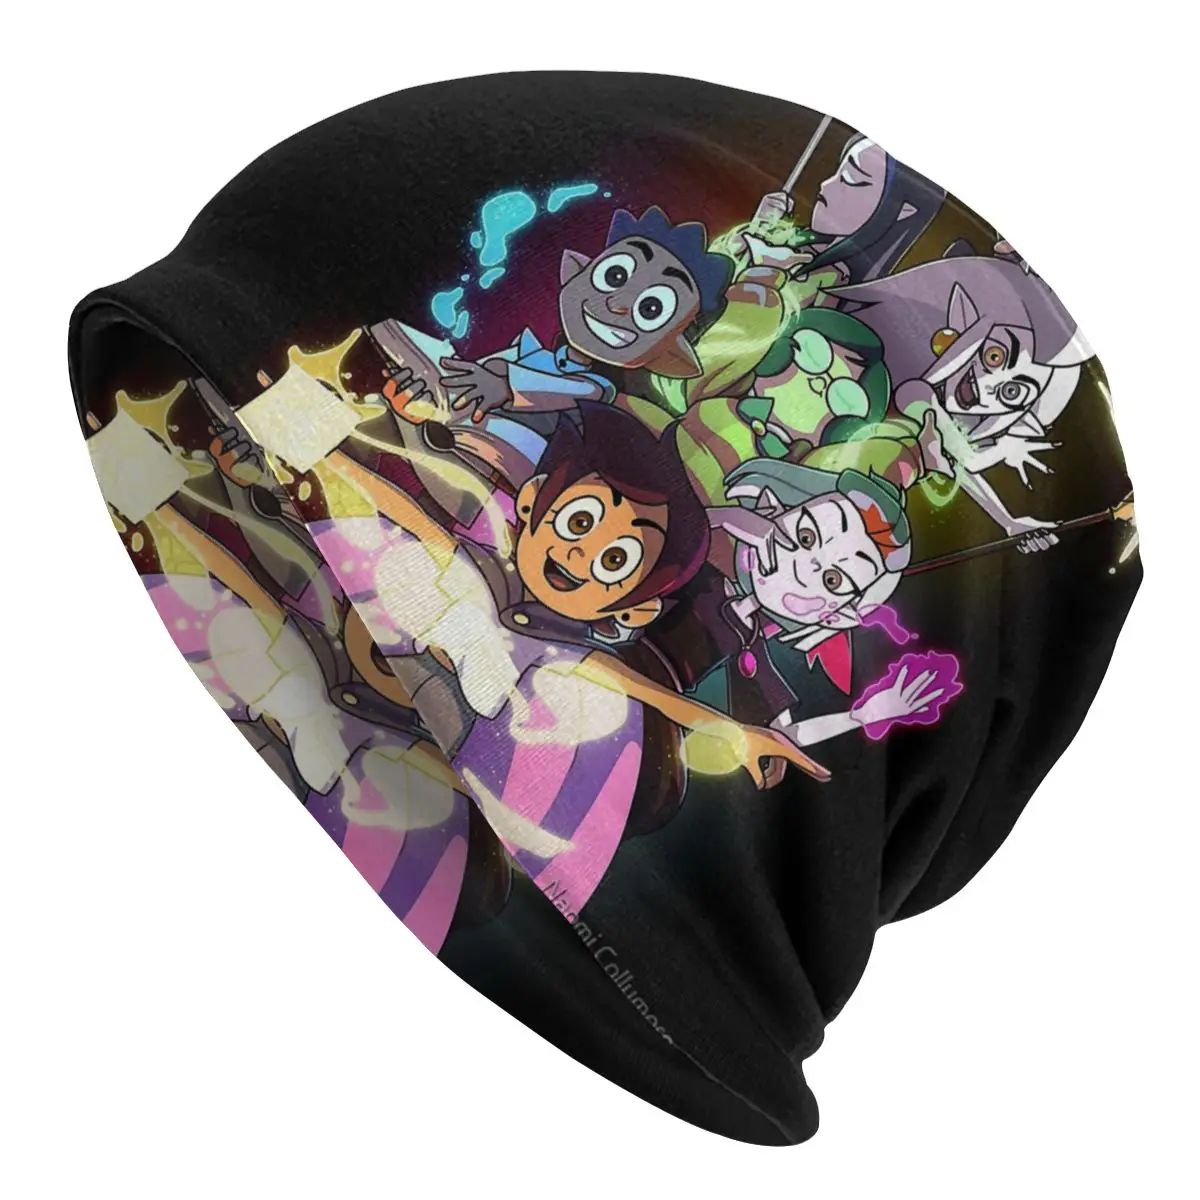 Baykuş Evi Anime Renkler Sihirli Erkek Kadın Kasketleri Rüzgar Geçirmez Kayak Kap Çift Katmanlı Kumaş Kaput Şapka